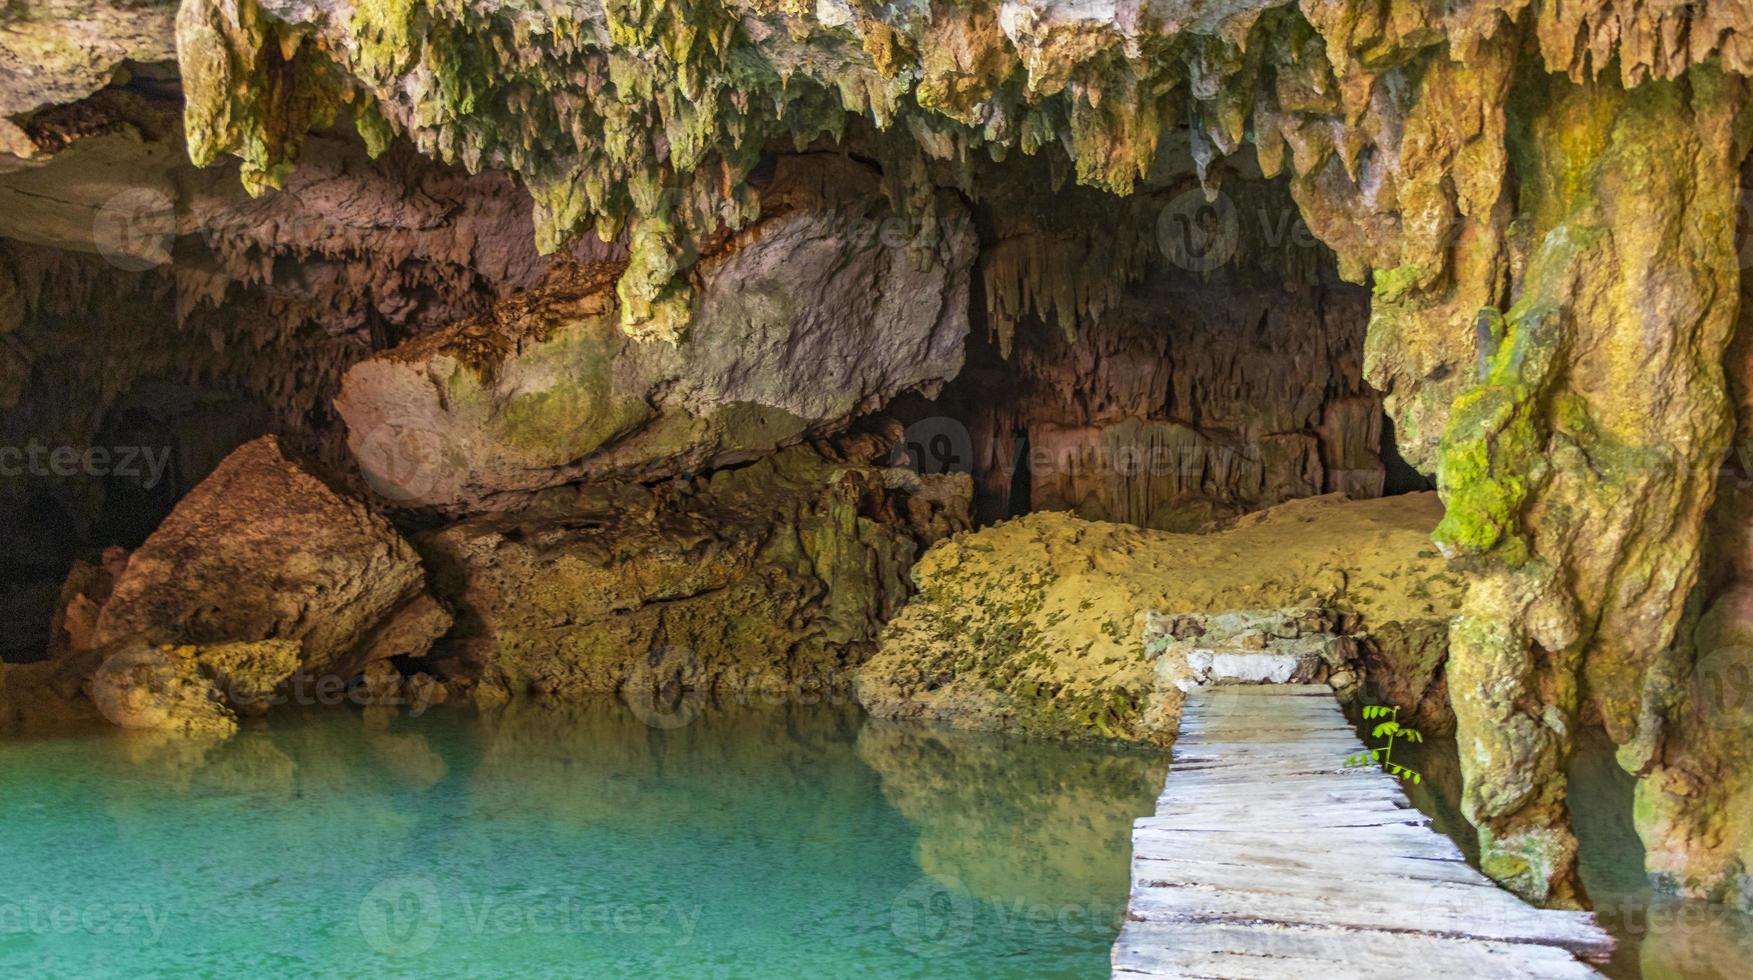 incroyable eau bleu turquoise et grotte calcaire doline cenote mexique. photo